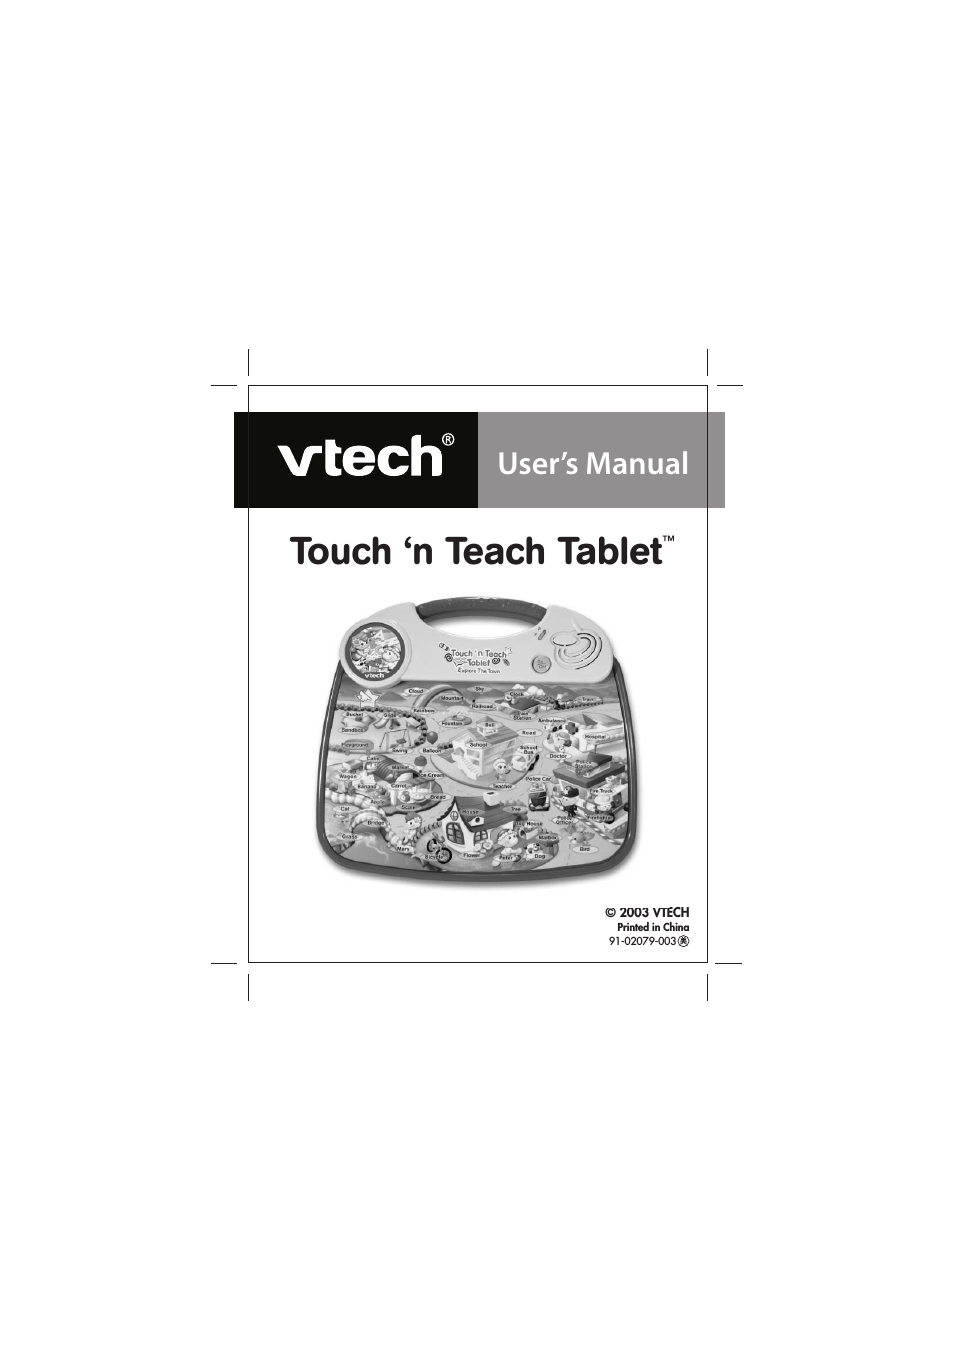 Touch 'n Teach Table